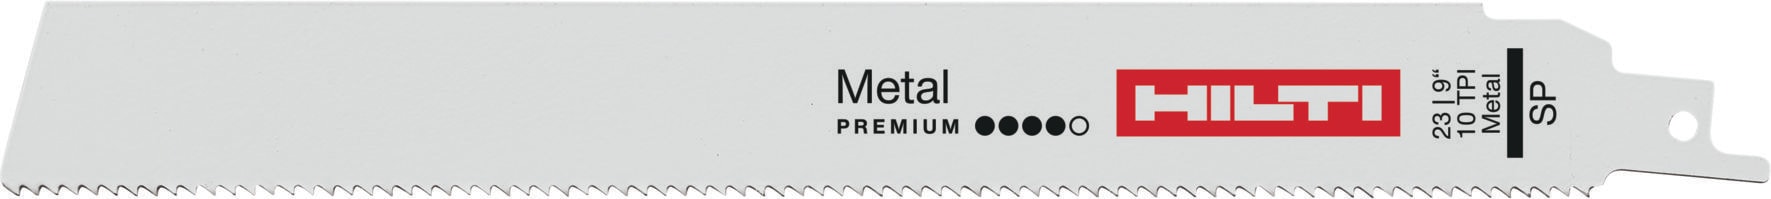 厚い金属の切断 - 金属用レシプロソーブレード - Hilti Japan